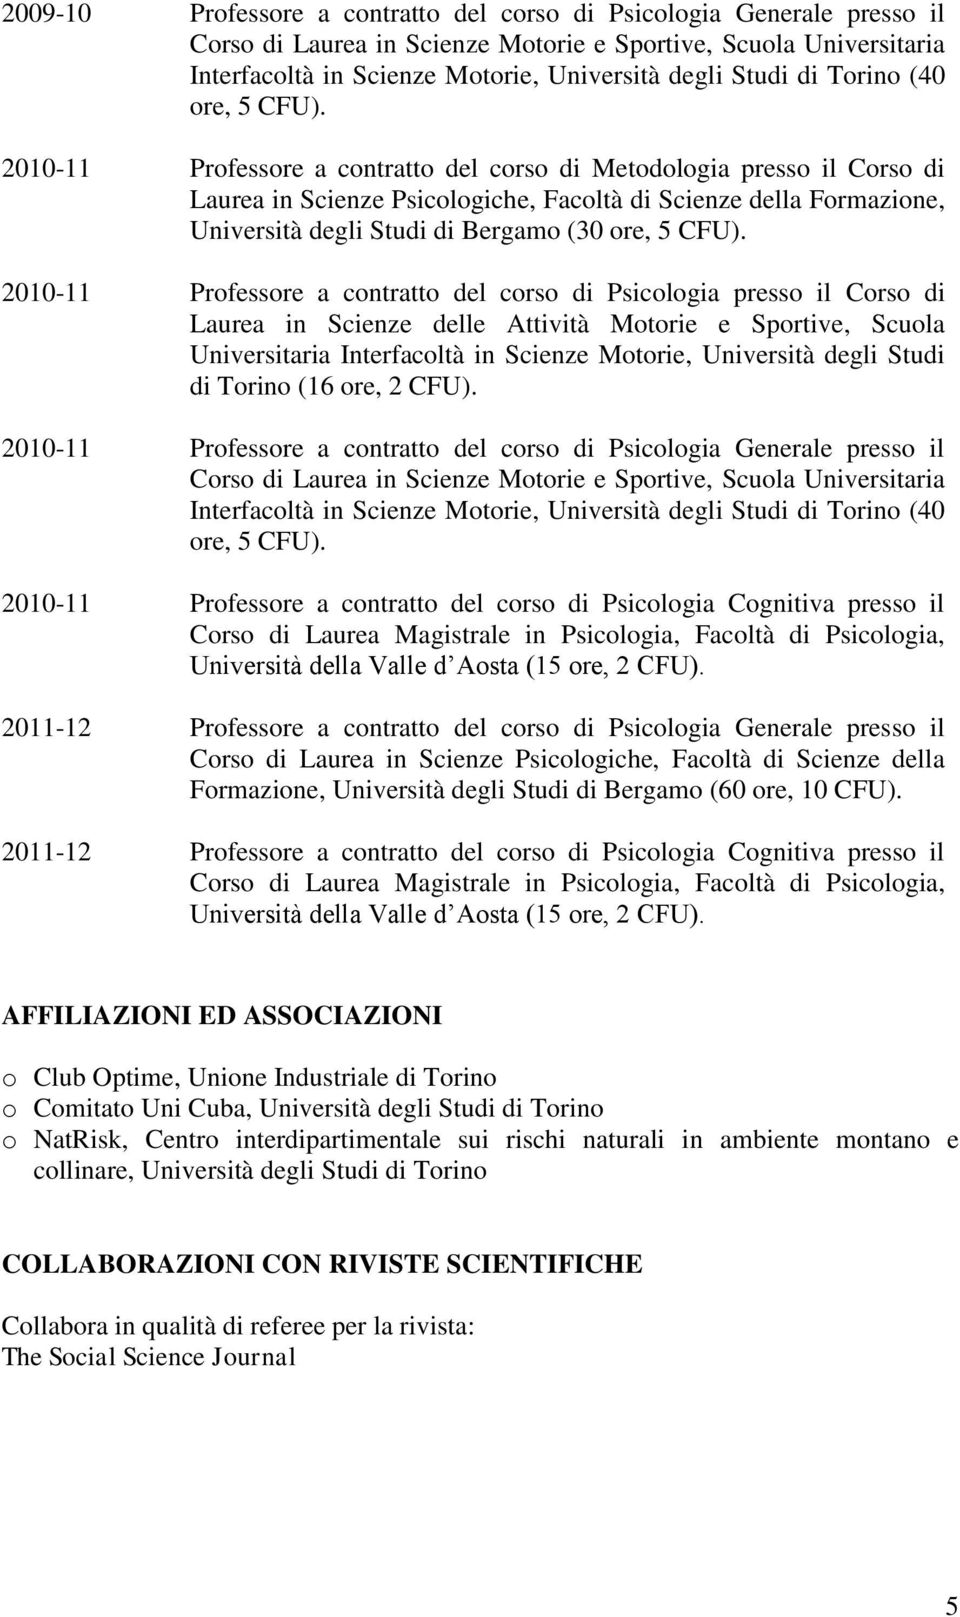 2010-11 Professore a contratto del corso di Metodologia presso il Corso di Laurea in Scienze Psicologiche, Facoltà di Scienze della Formazione, Università degli Studi di Bergamo (30 ore, 5 CFU).